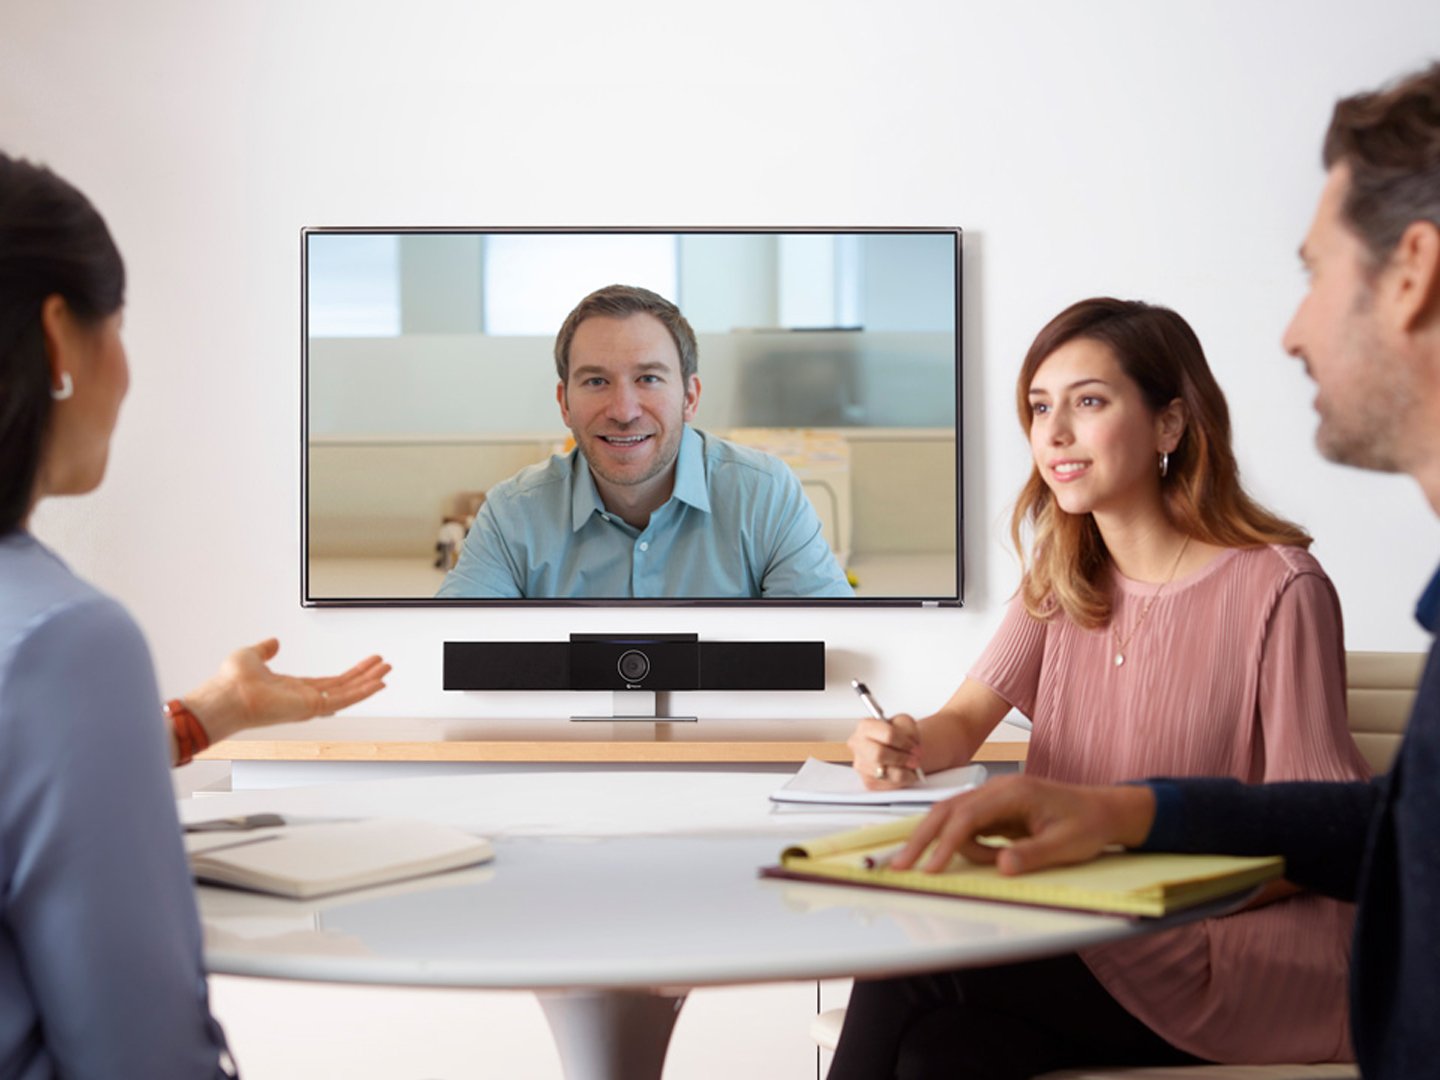 Drei Personen an einem Tisch in einer Sitzung mit einem Display auf dem eine Videokonferenz läuft